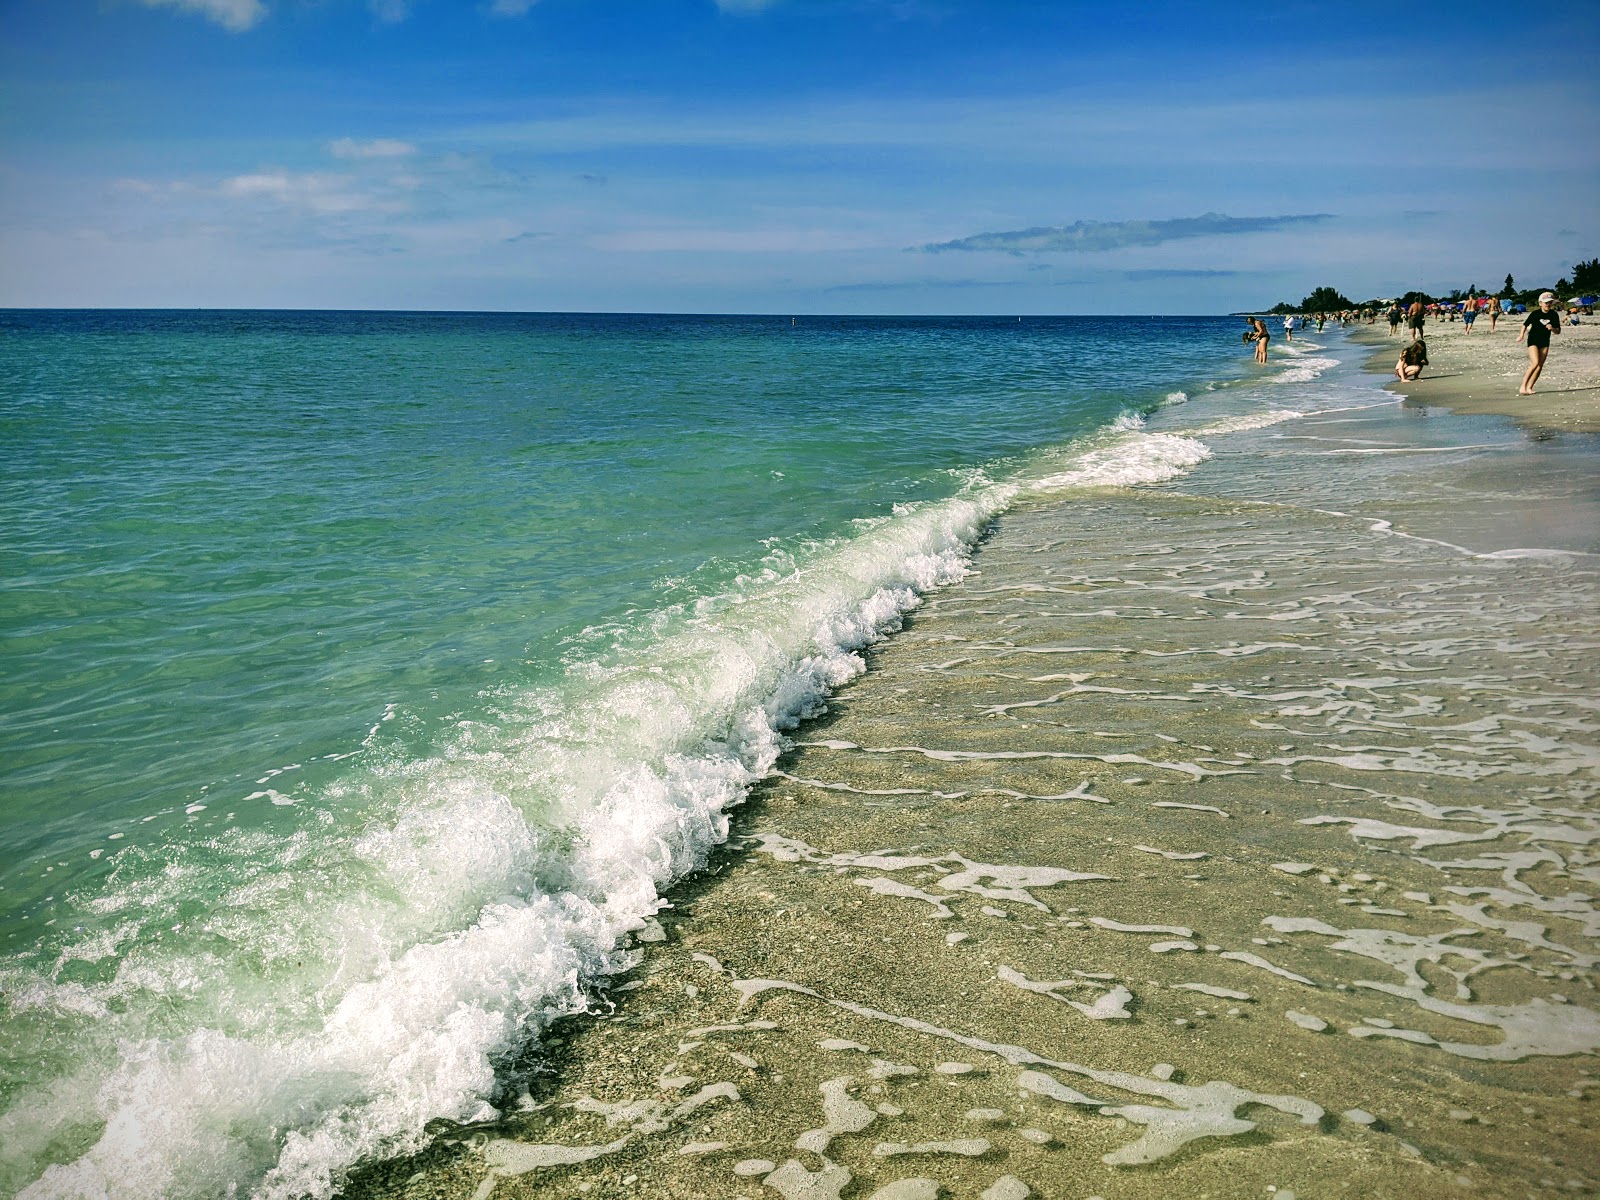 Photo de Manasota Key beach - endroit populaire parmi les connaisseurs de la détente